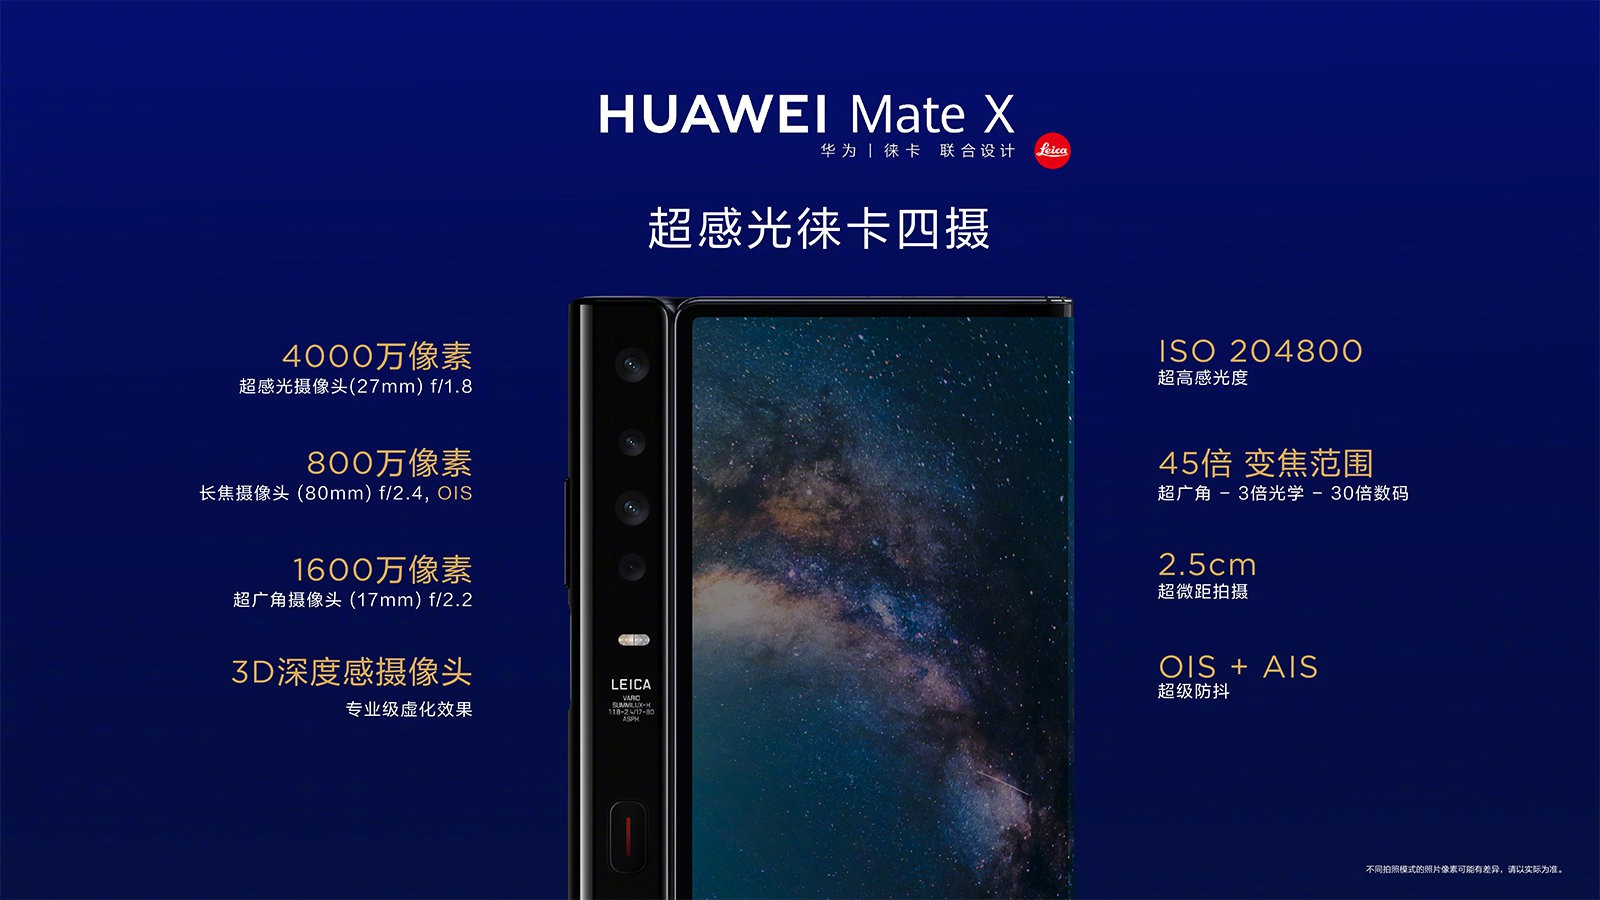 华为5G折叠屏Mate X发布：售价16999元 11月15日开售